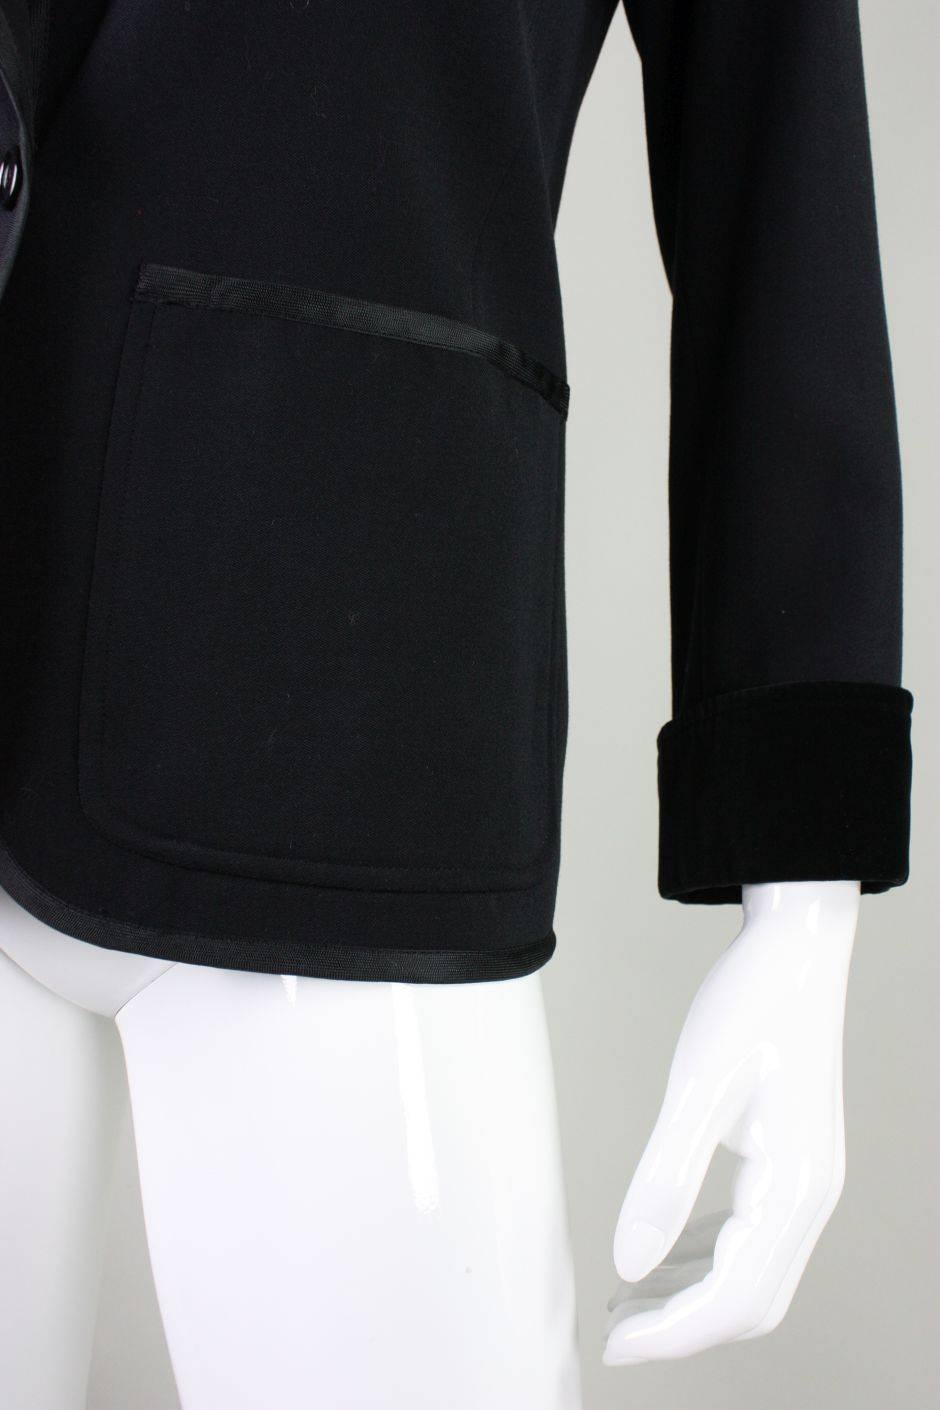 1970's Yves Saint Laurent Black Wool Tuxedo Jacket For Sale 2